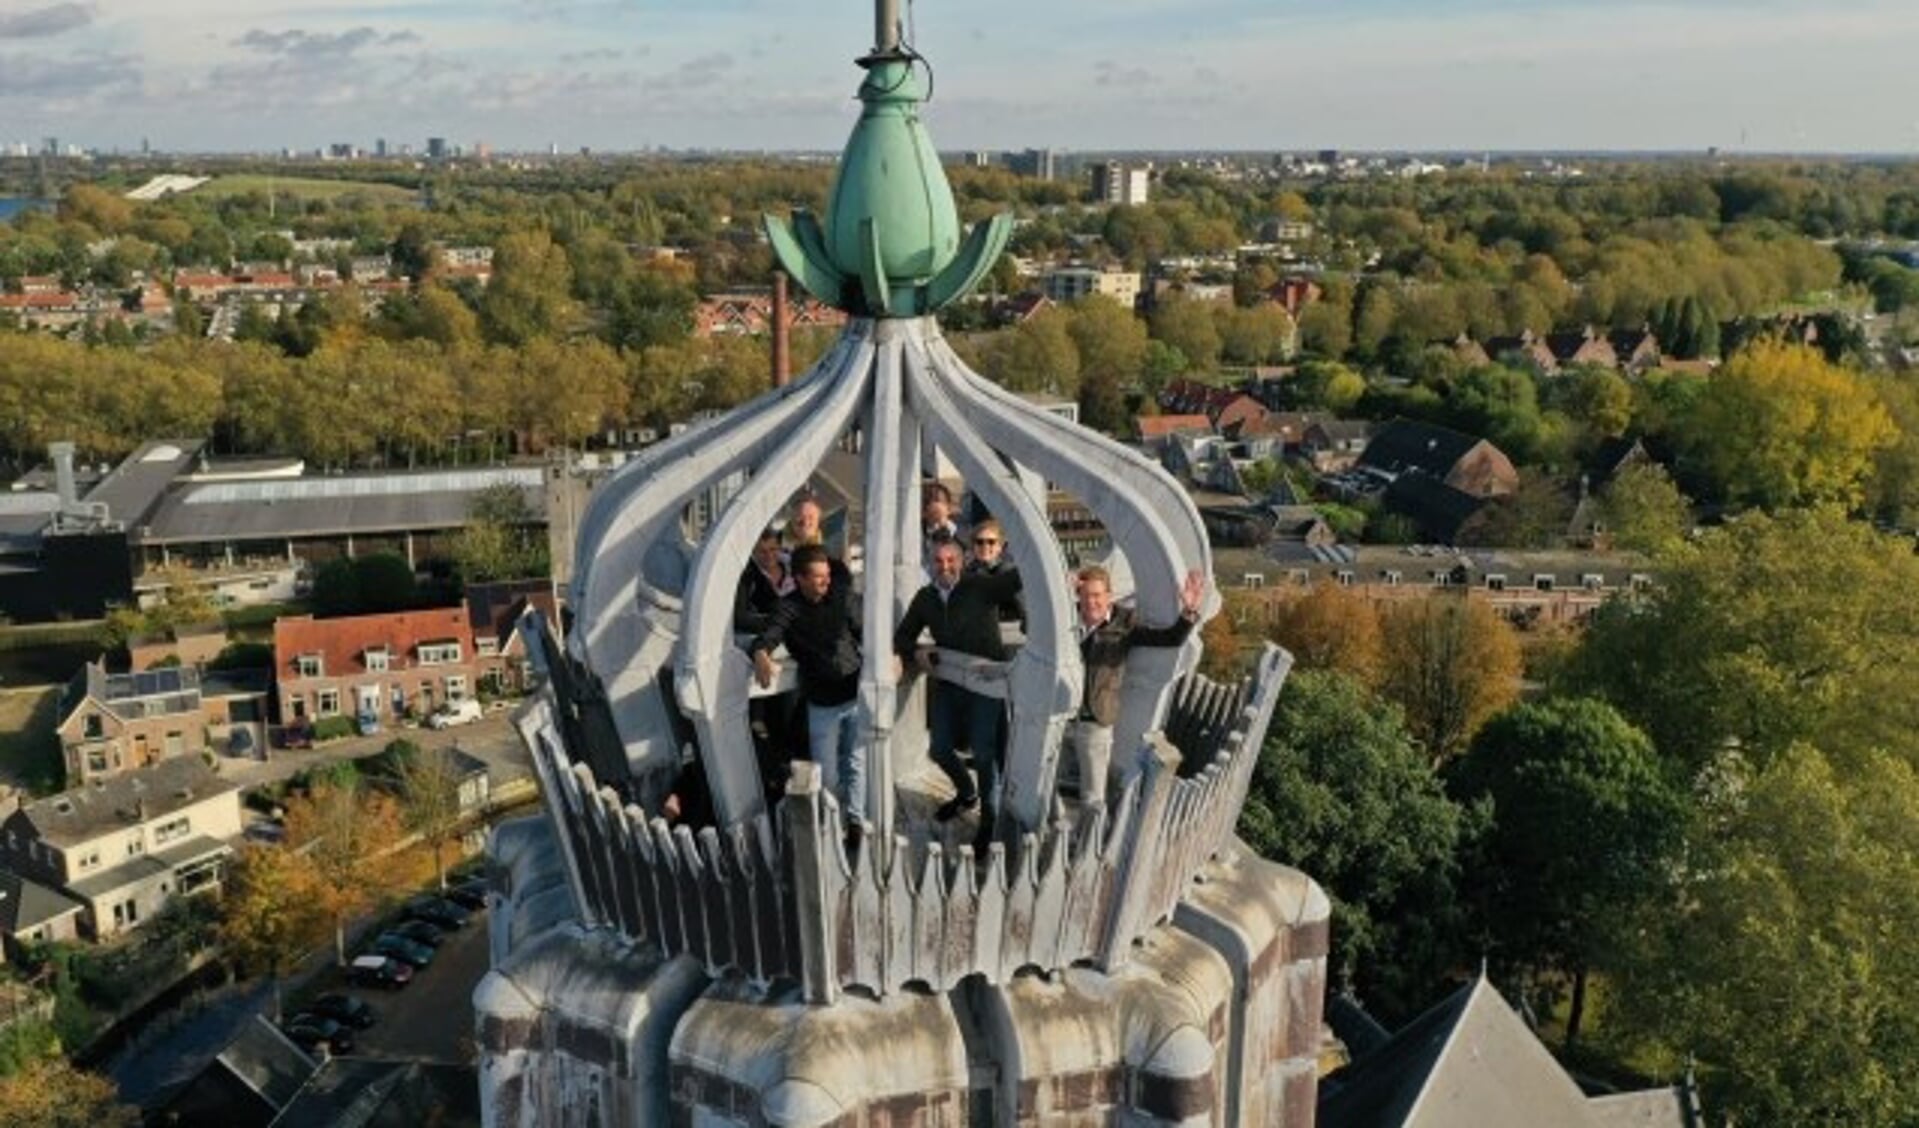 De jury kwam voor het fotomoment bijeen op een wel zeer verrassende plek: bovenin de kroon van de renaissance Pasqualini-toren van de Oude Sint-Nicolaaskerk, op 60 meter hoog.